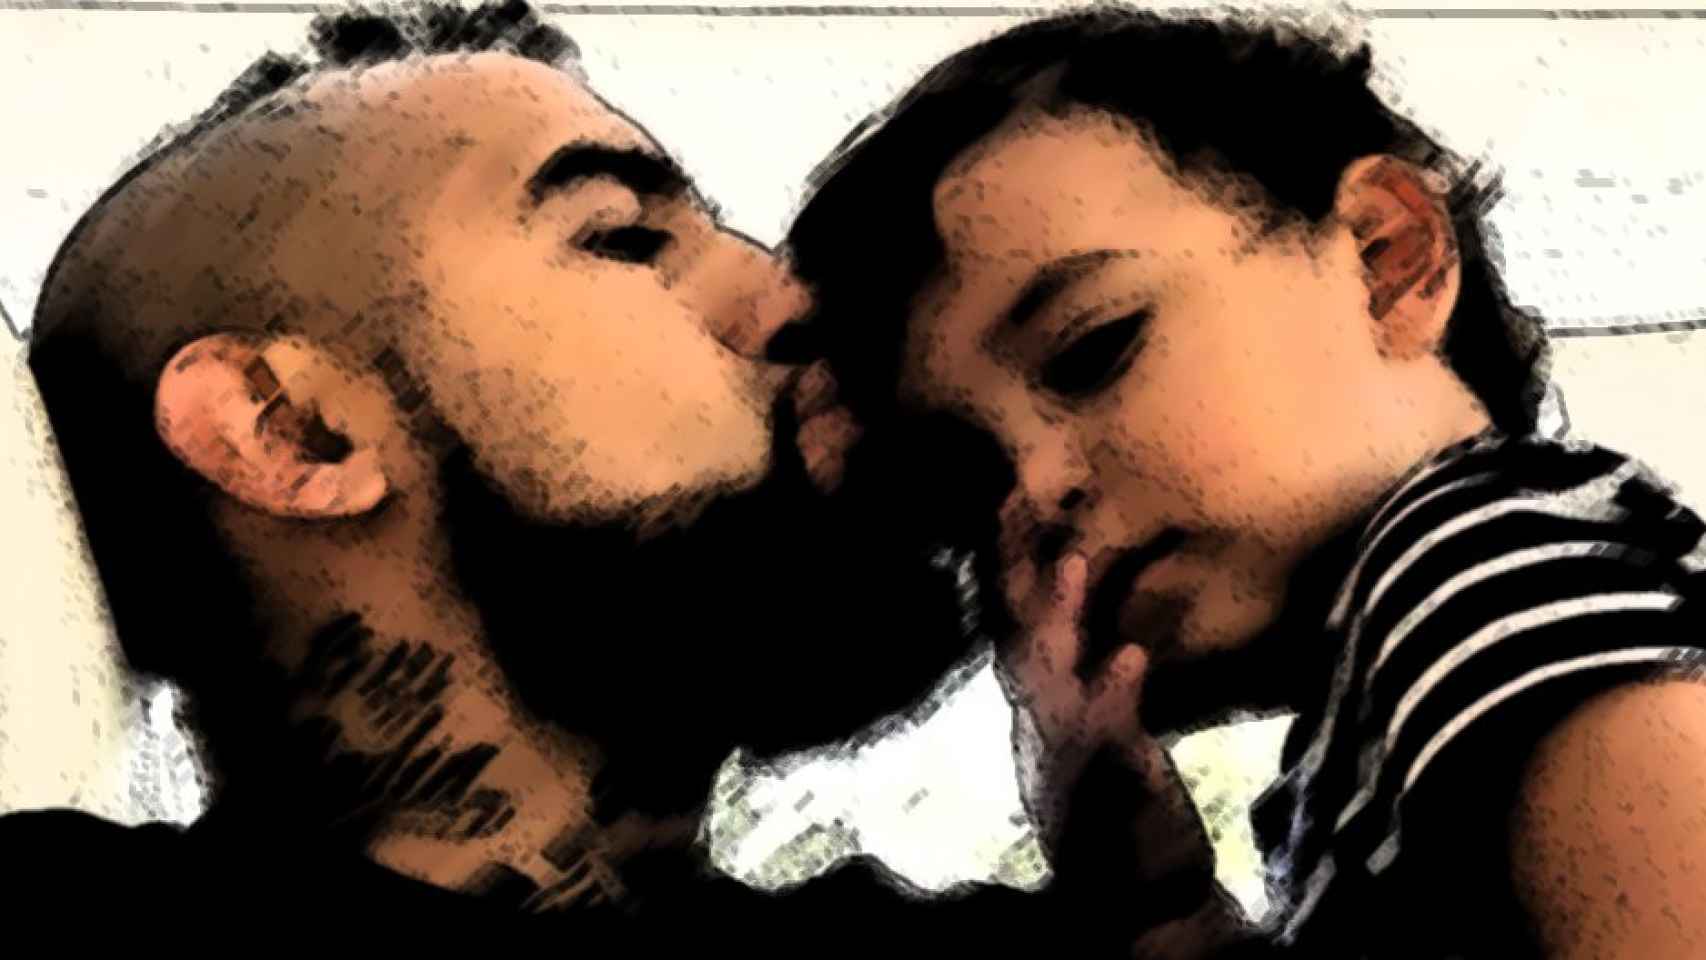 Arturo Vidal besa en la frente a su hijo